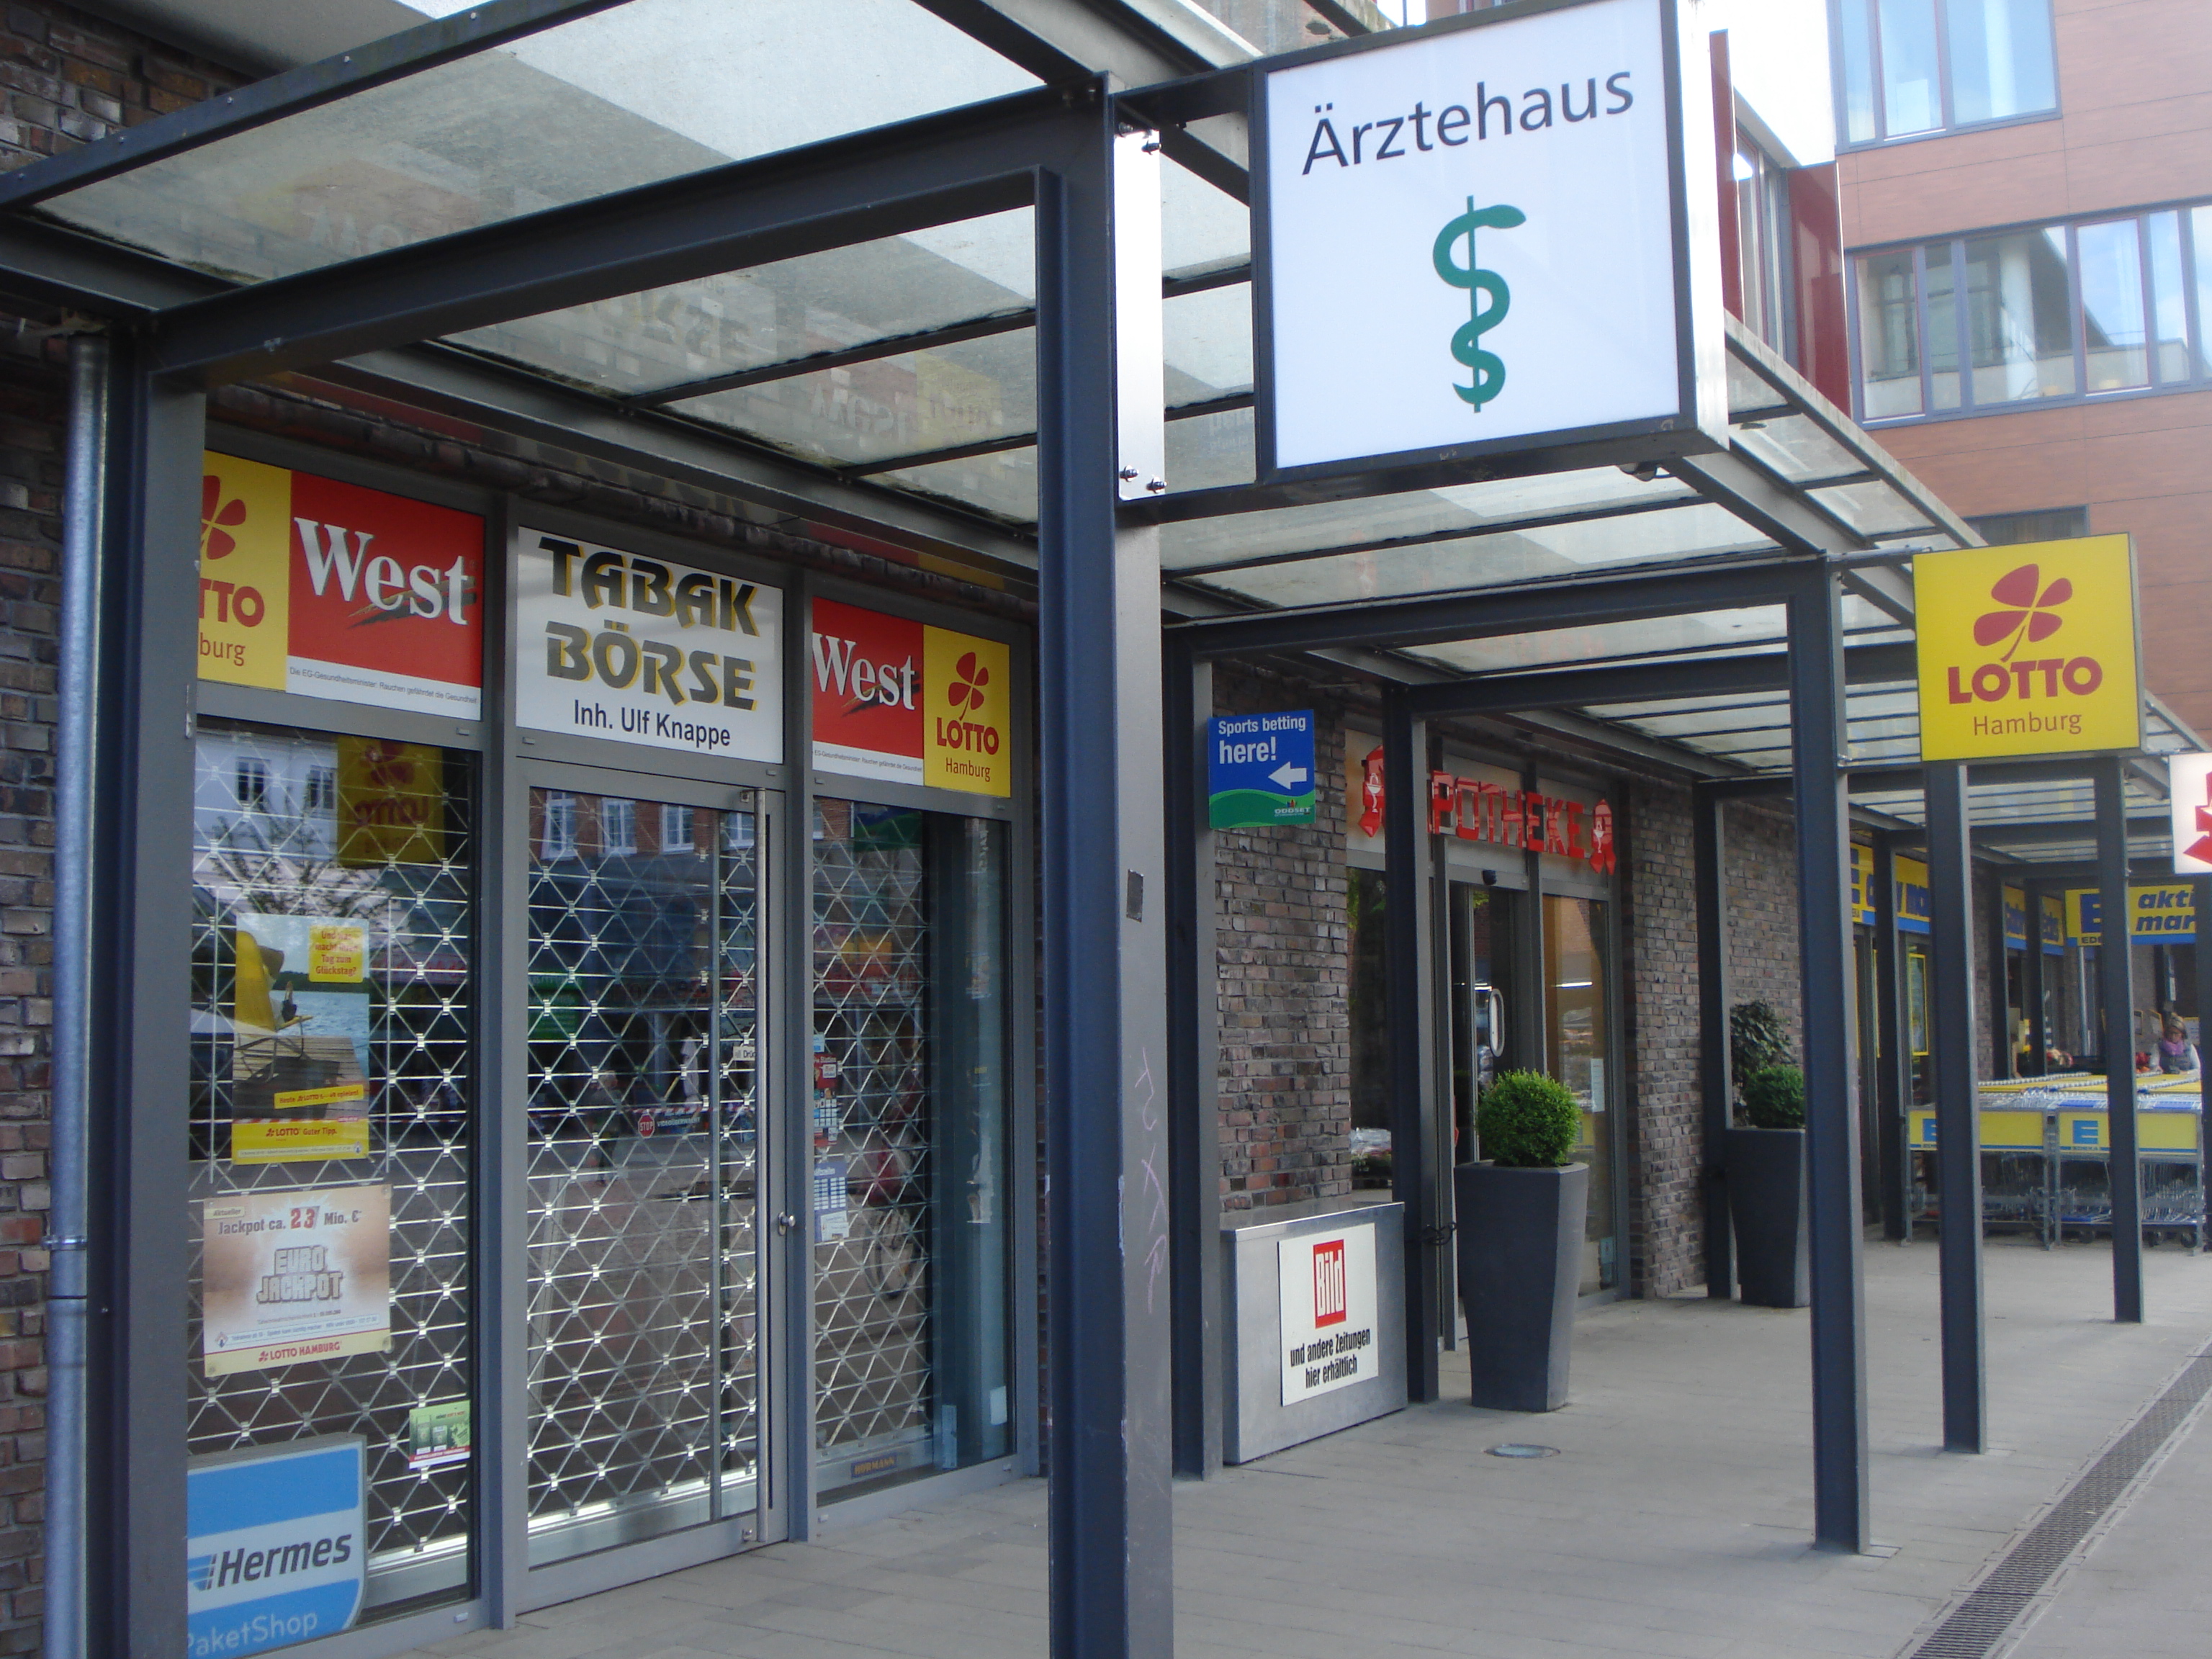 Hermes Paketshop (Tabak Boerse) in 22297 Hamburg-Alsterdorf